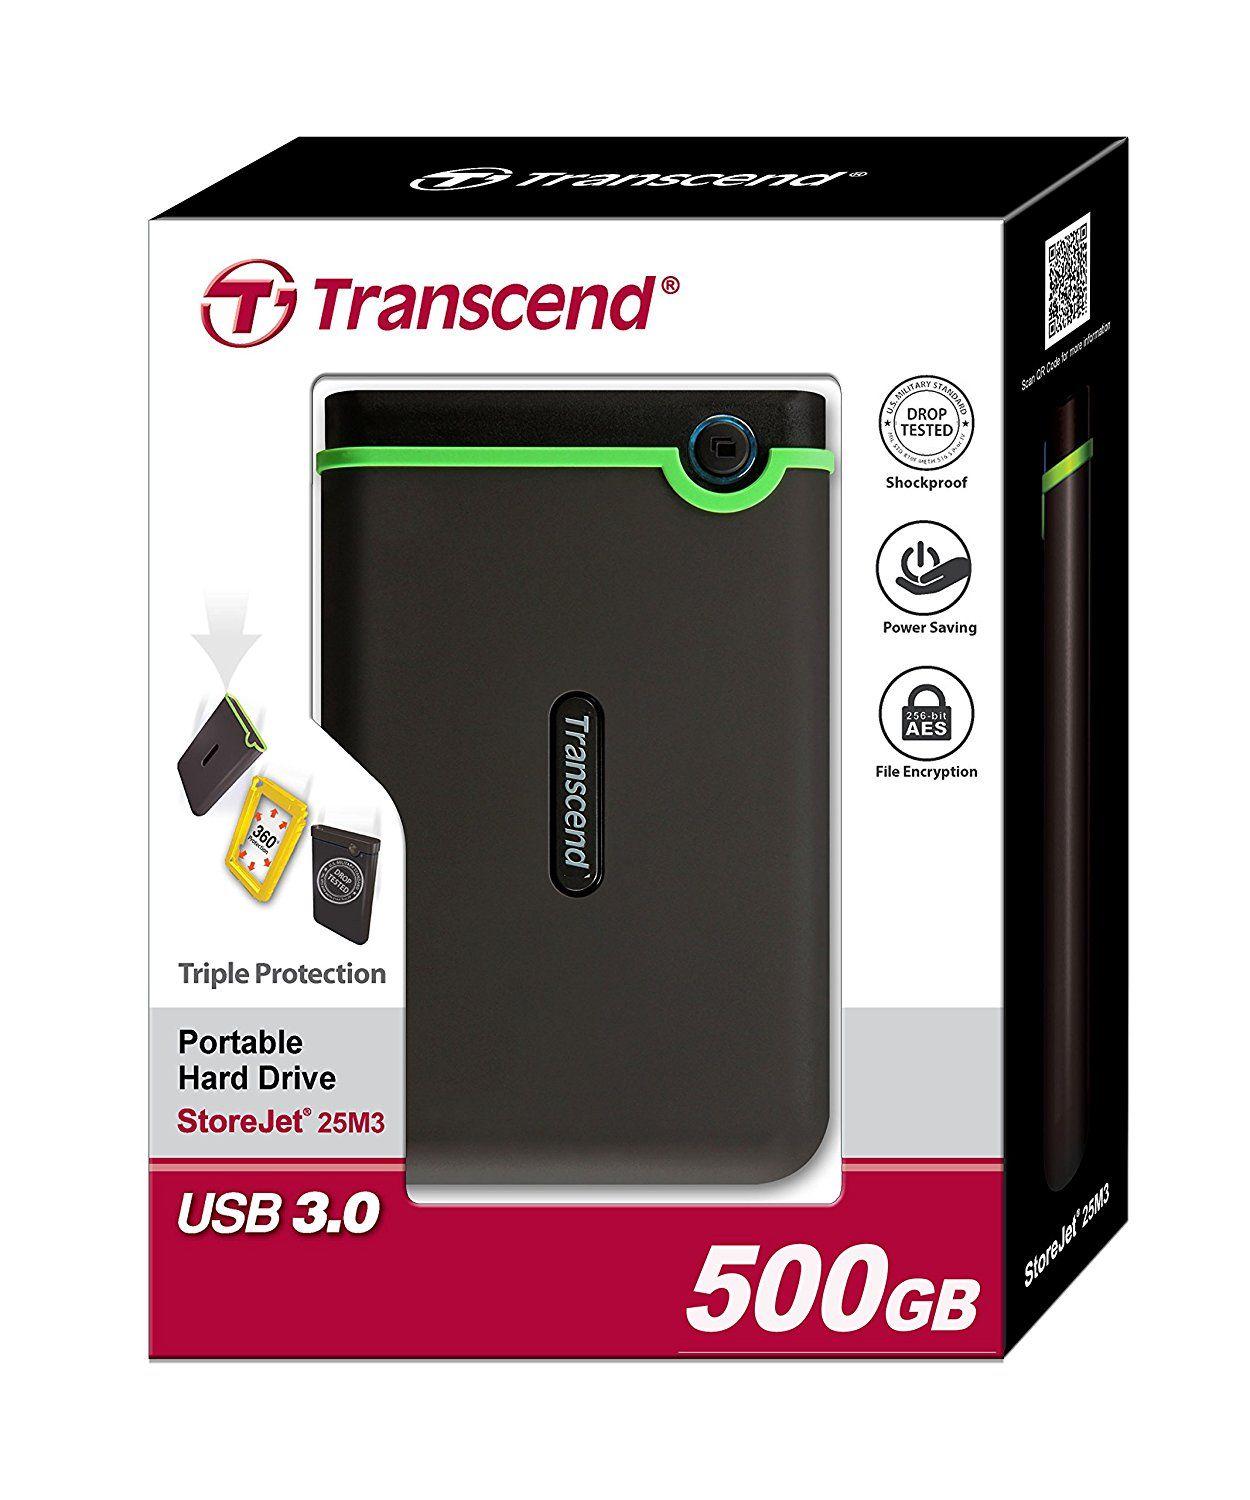 Transcend StoreJet 25M3 500GB USB 3.0 External Hard Drive